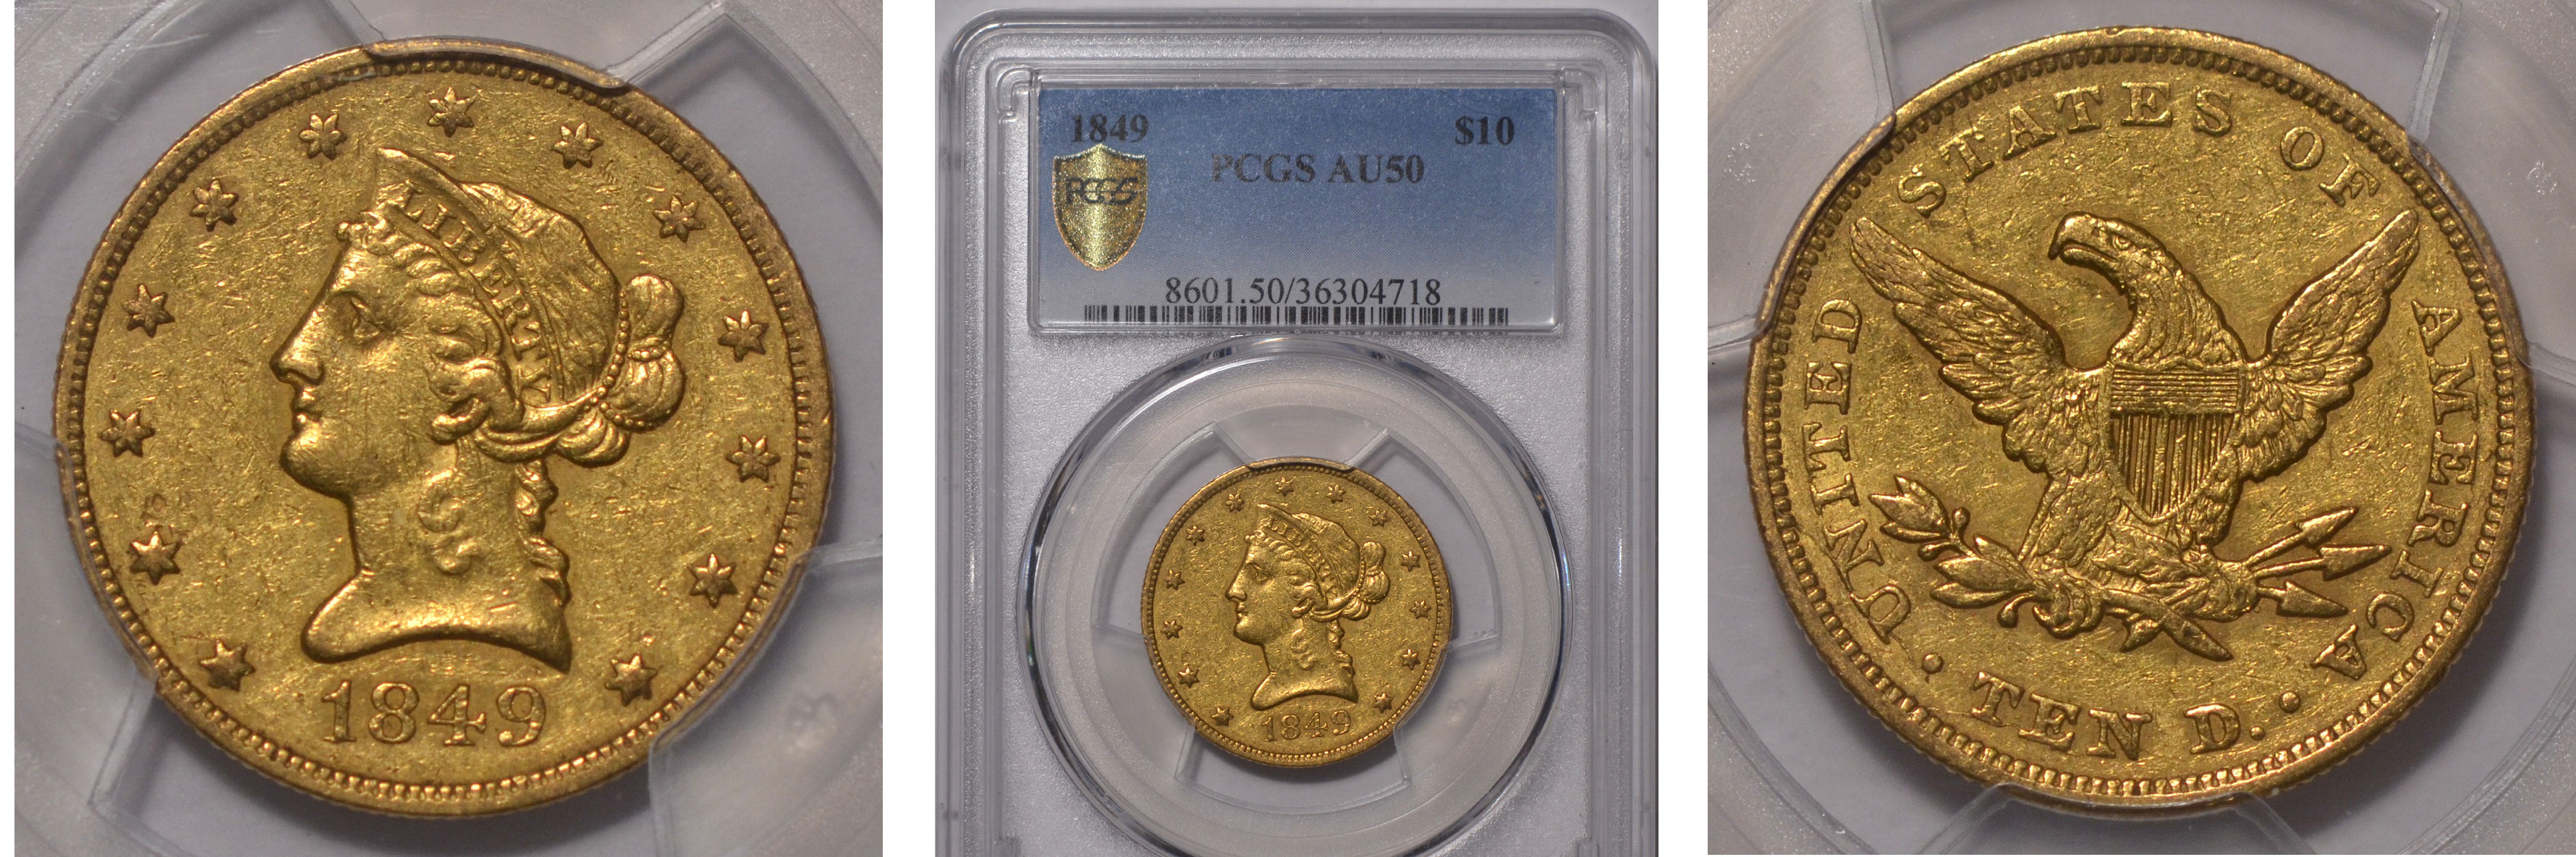 1849 Gold $10 Eagle PCGS AU50